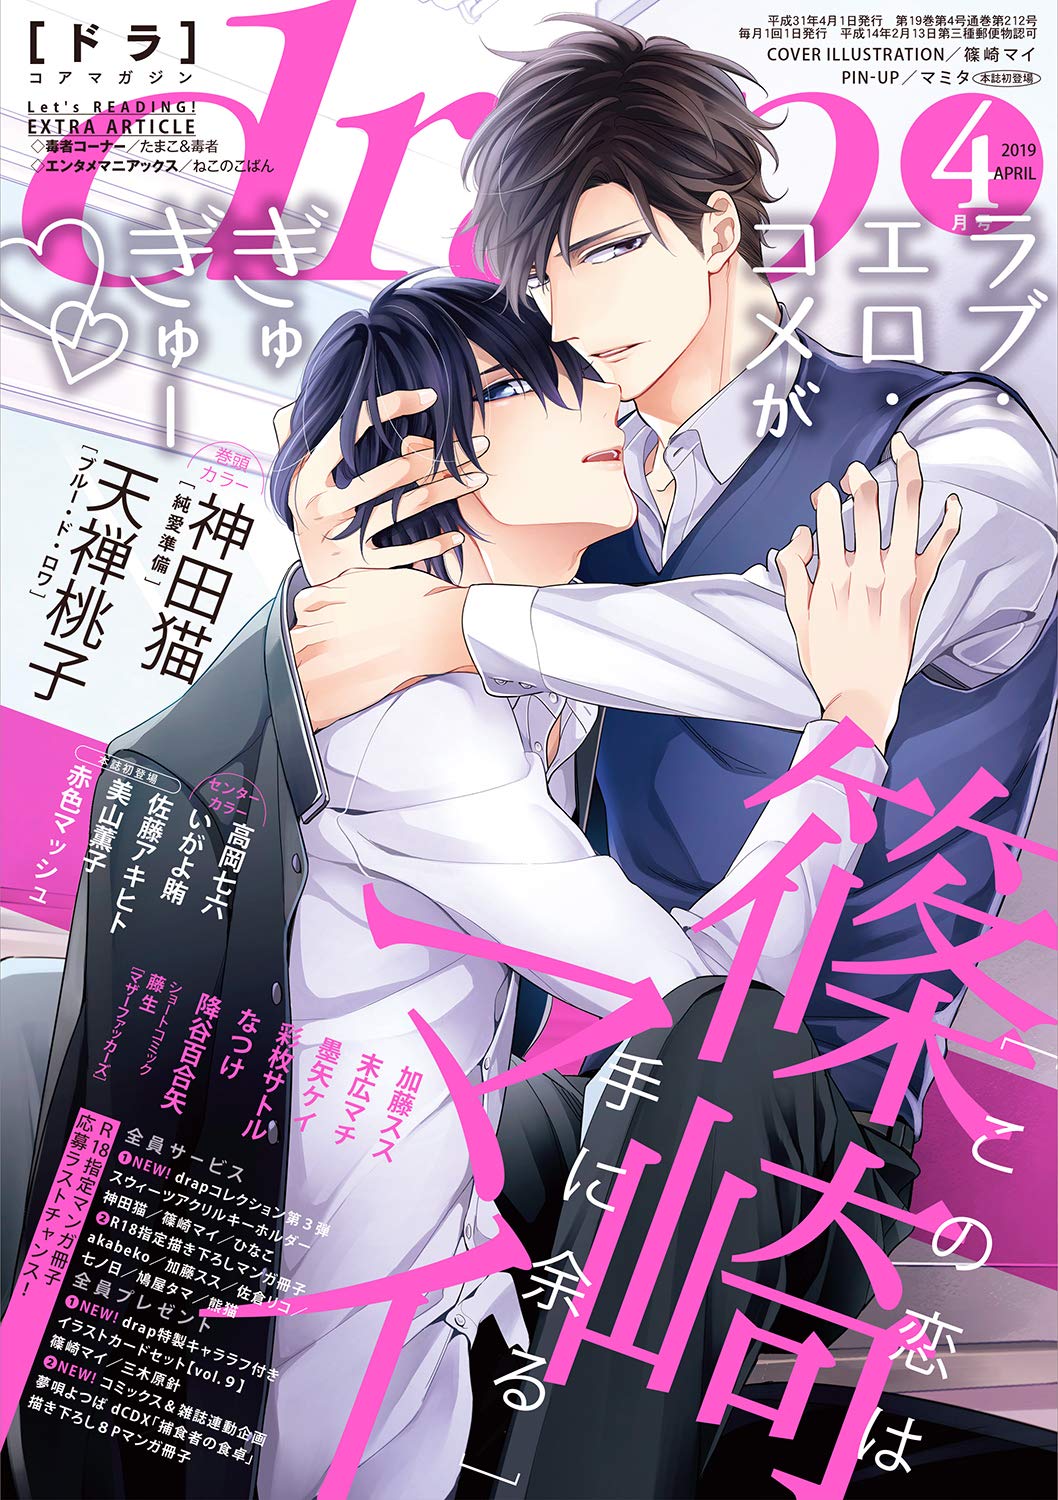 Boys Love (Yaoi) Comics (drap(ドラ)2019年4月号) / 藤生 & なつけ & Kanda Neko & Shinozaki Mai & Takaoka Nanaroku